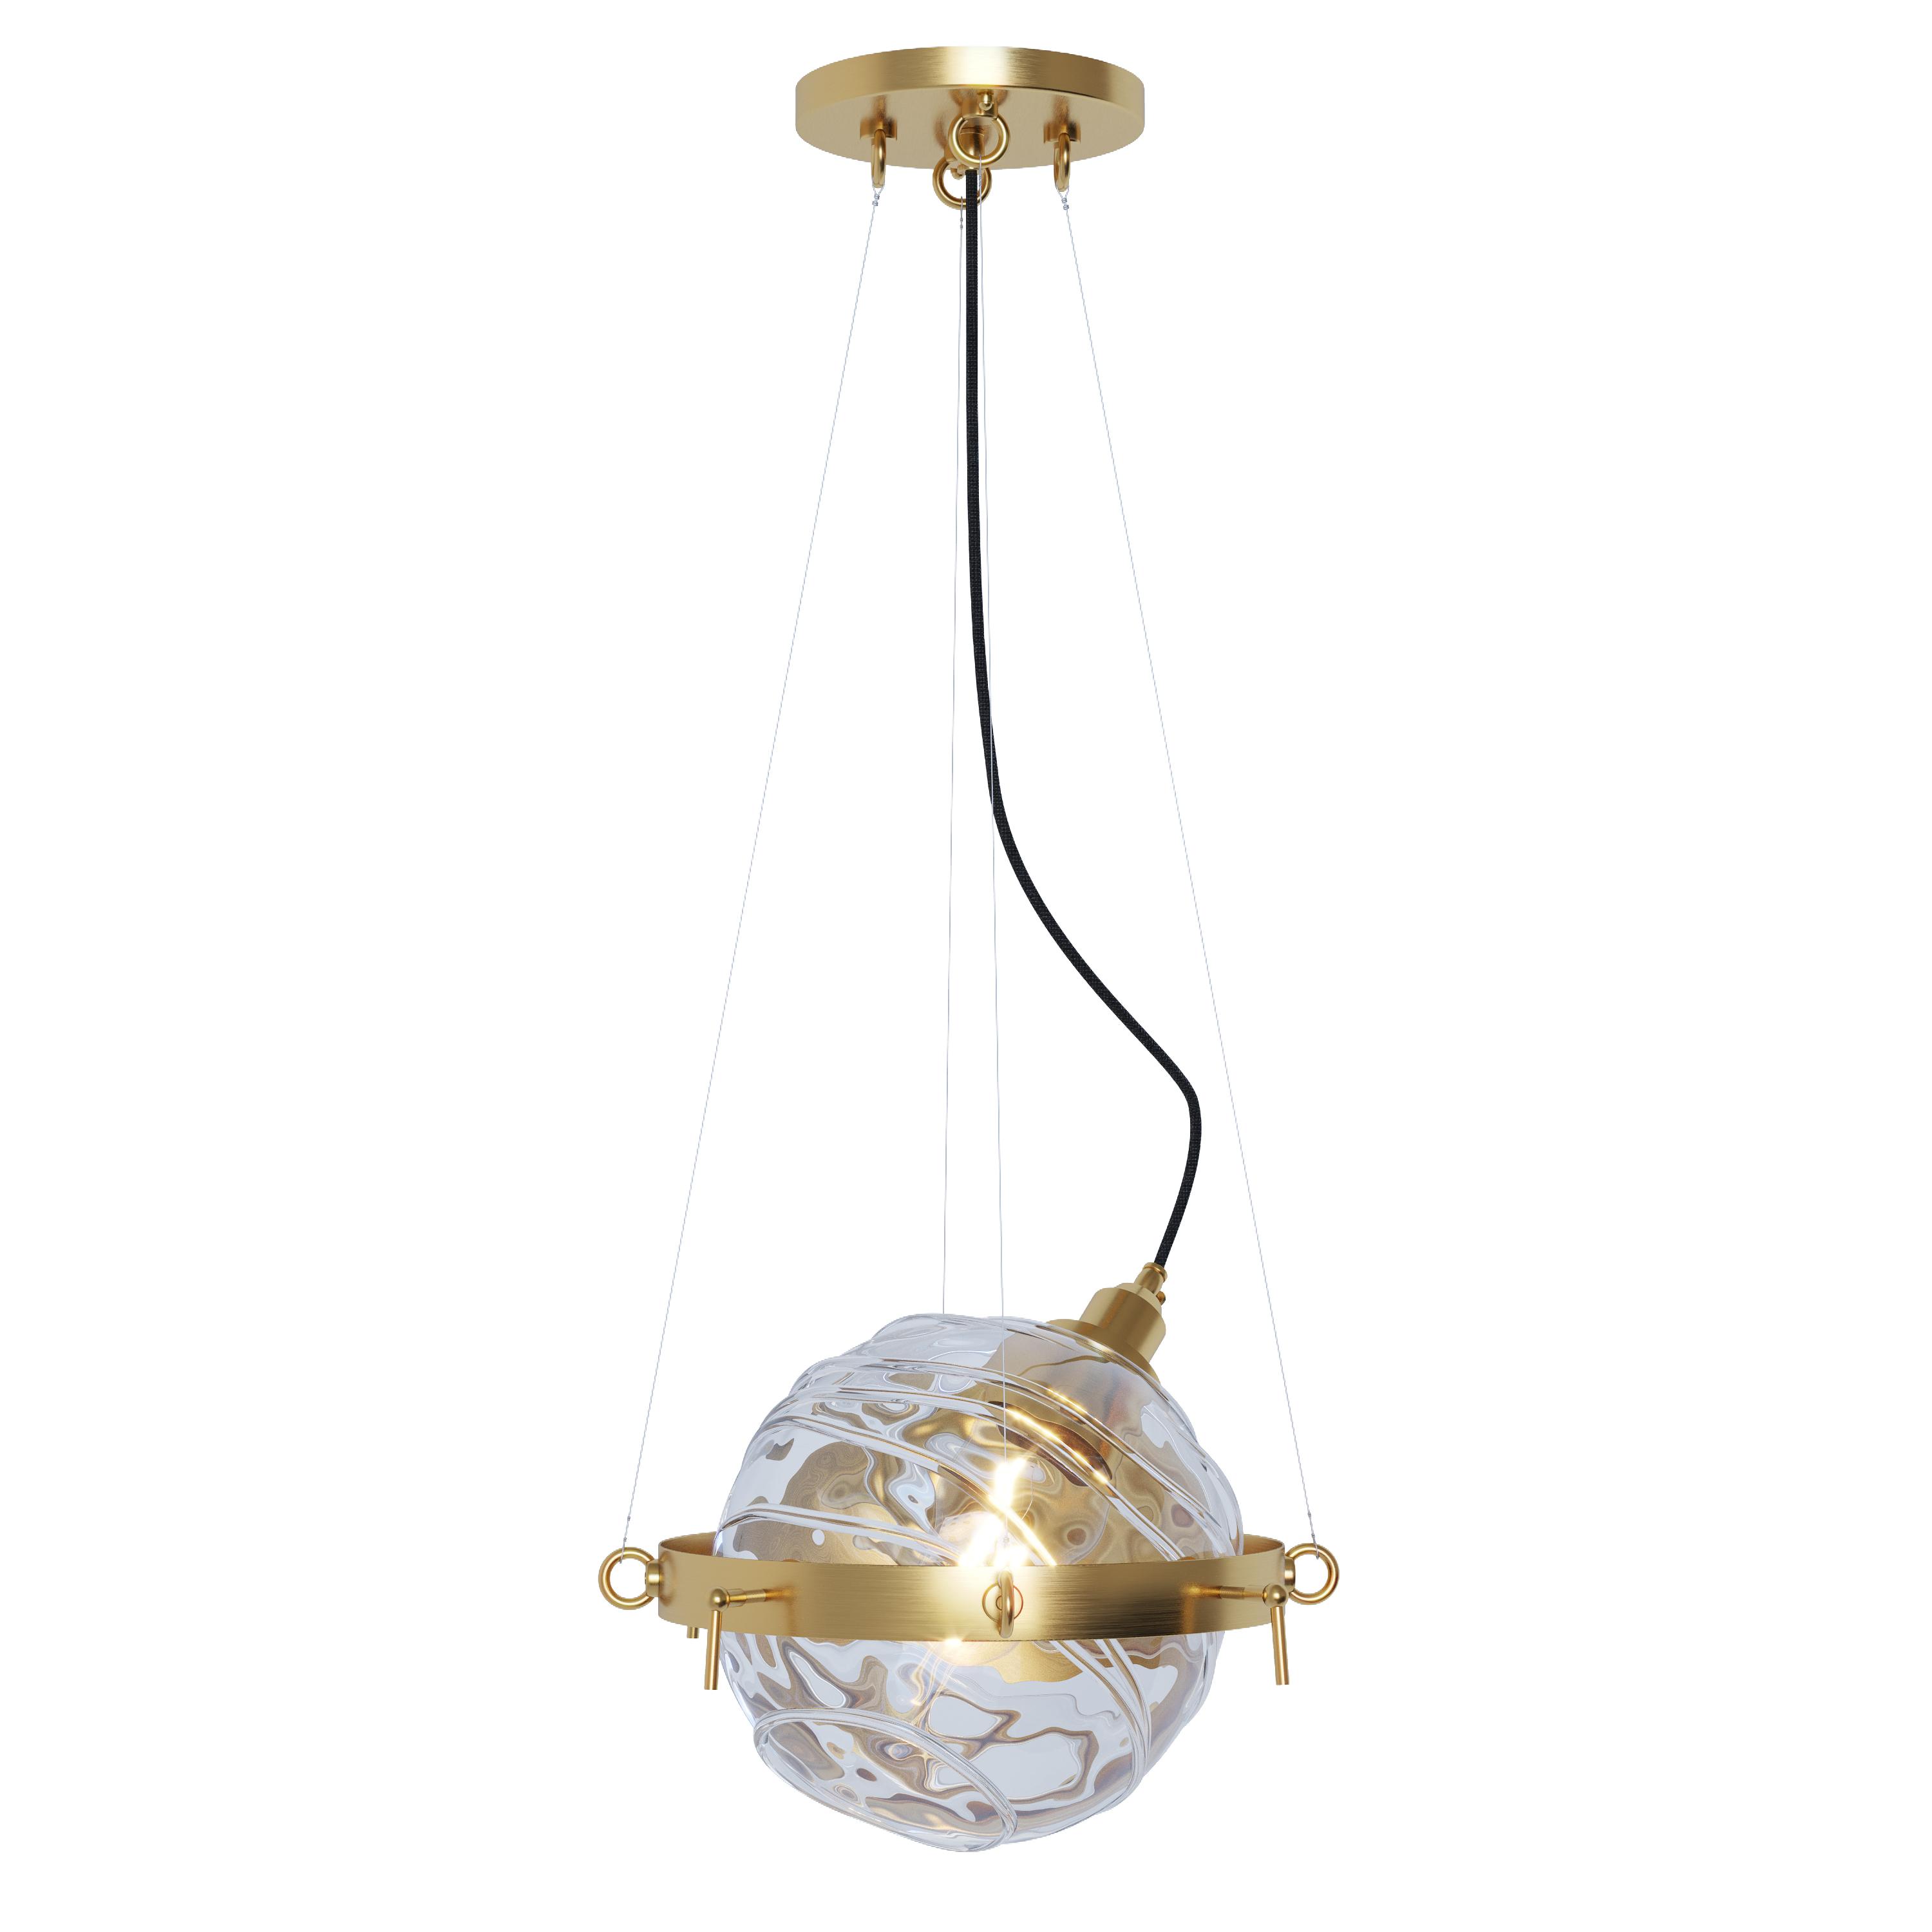 AA lamp, SKU. 25576 by Pikartlights 3d model